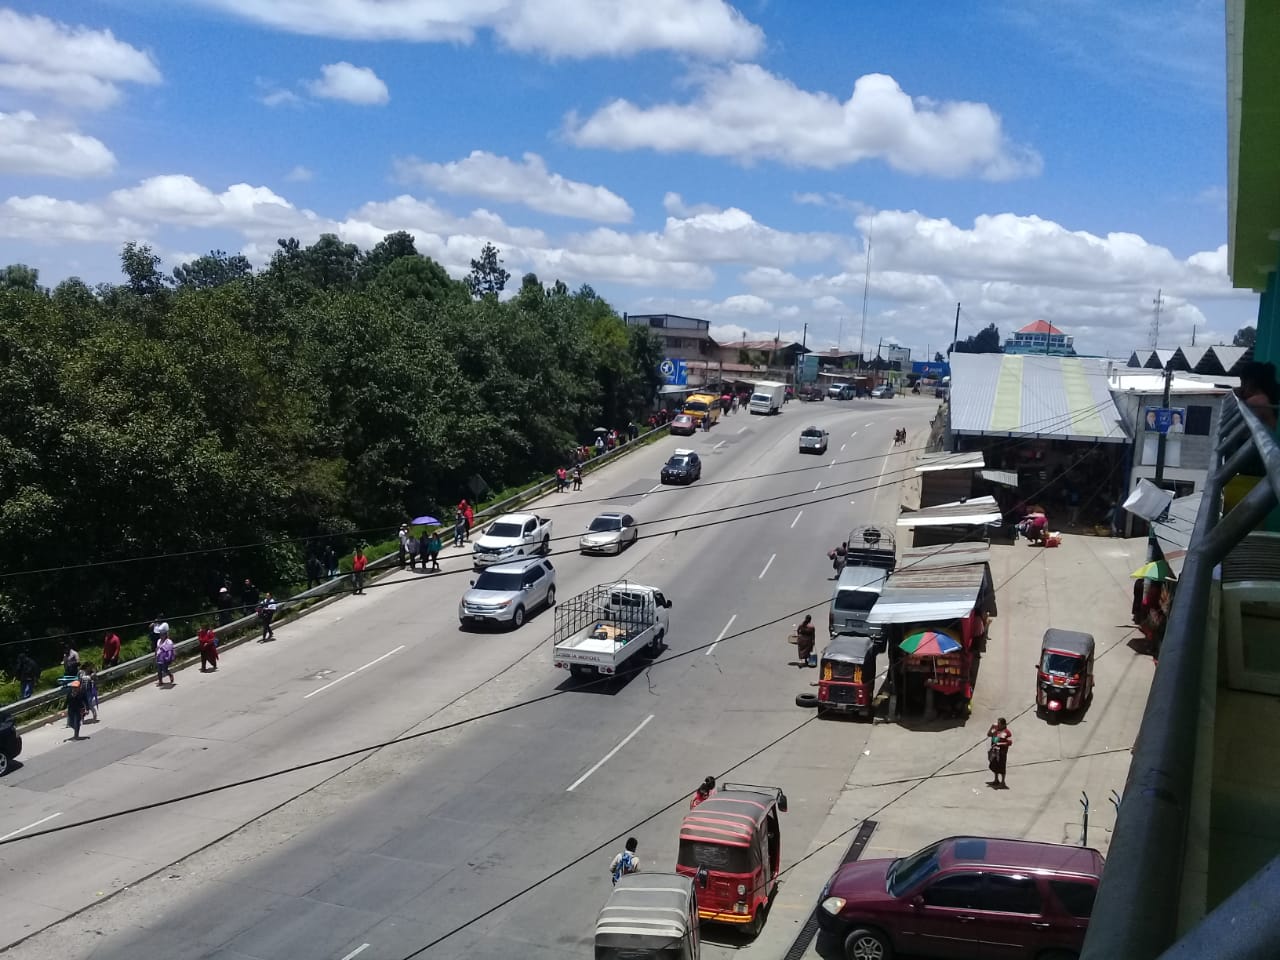 Automotores circulan con normalidad en el km 110 de la ruta Interamericana, Chichicastenango, Quiché, luego de que fue retirado el bloqueo. (Foto Prensa Libre: Héctor Cordero).